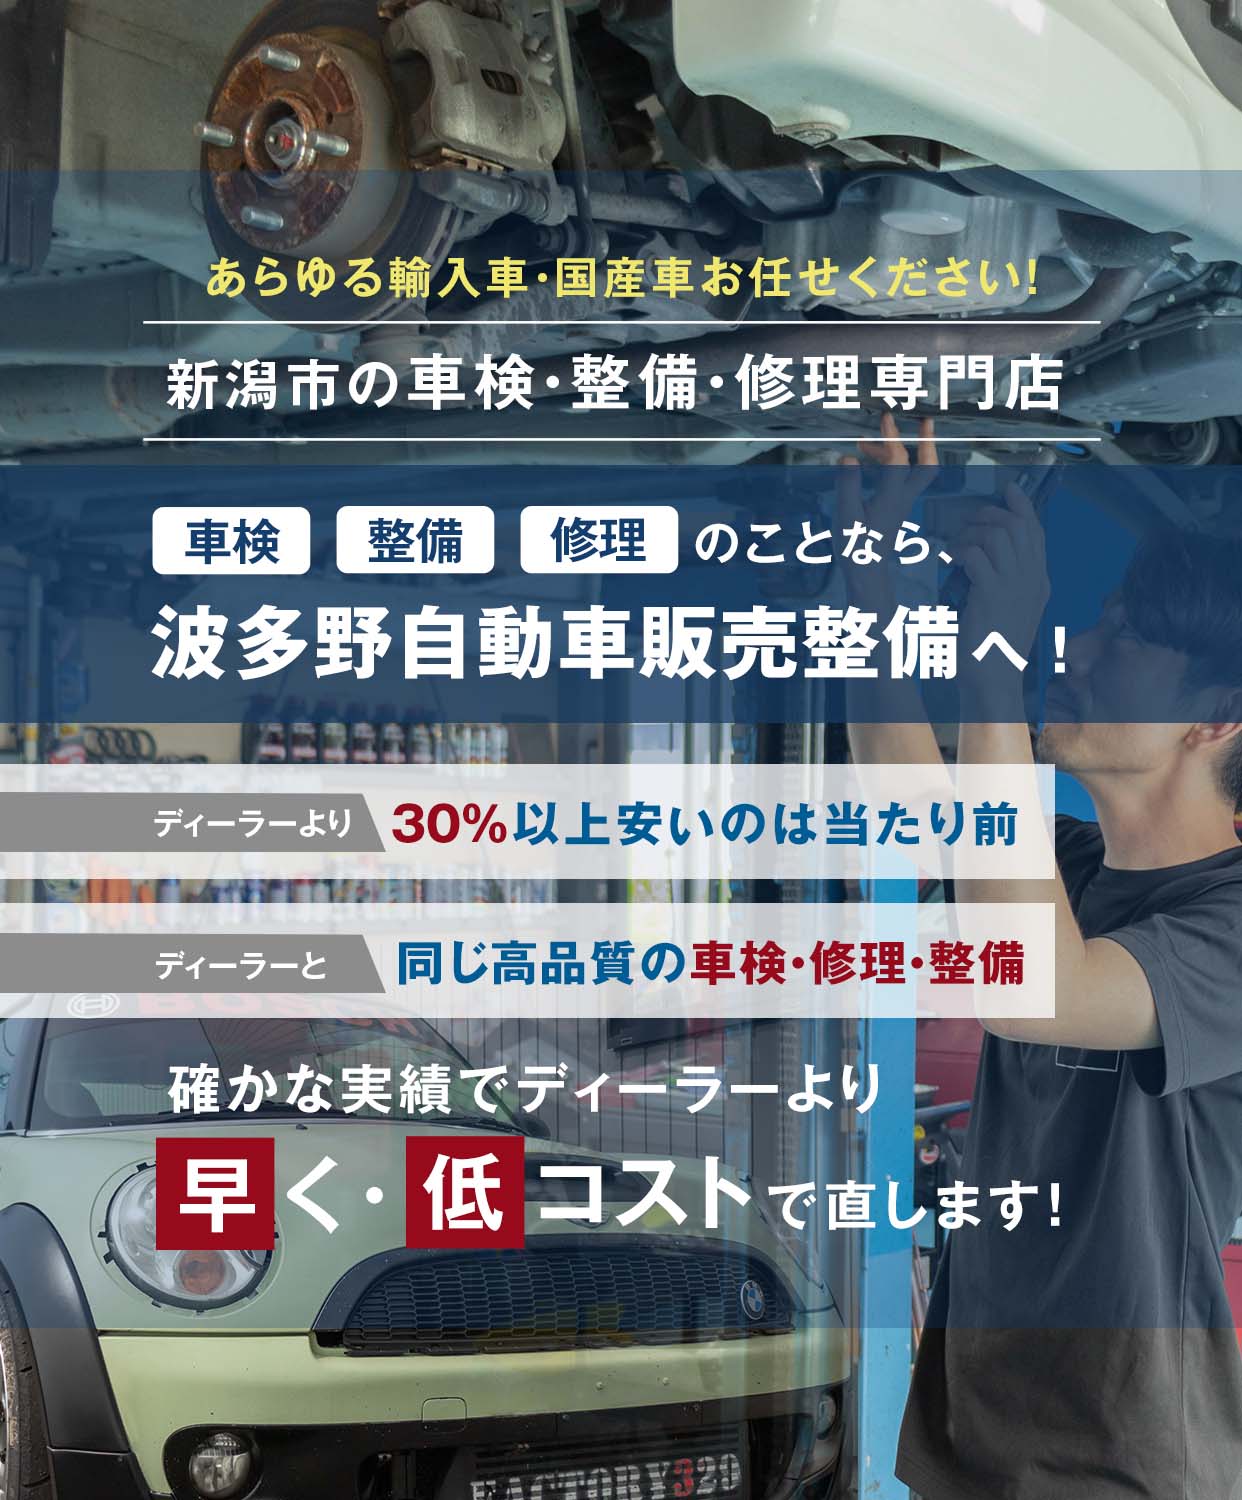 波多野自動車販売整備 | あらゆる輸入車・国産車の整備・車検・修理は新潟県新潟市・波多野自動車販売整備に任せください